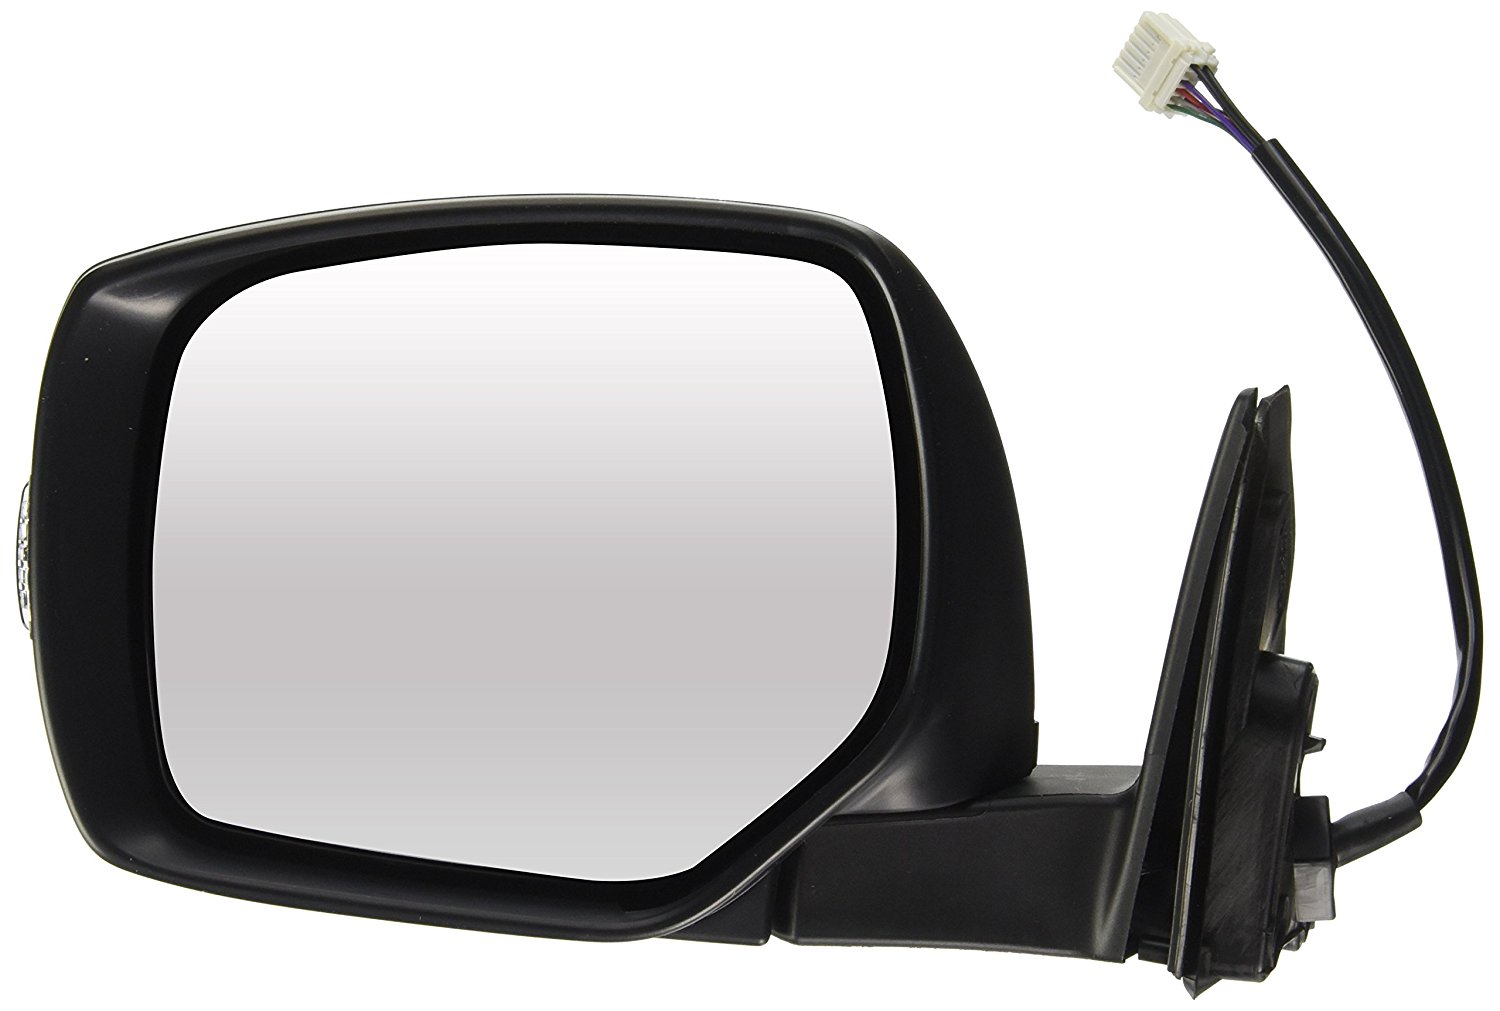 Oglinda exterioara Subaru Legacy (Bm/Br), 04.2012-, Subaru Outback (Br), 09.2012- , partea Stanga, culoare sticla crom , sticla convexa, cu carcasa grunduita, cu incalzire , ajustare electrica, 91036AJ291